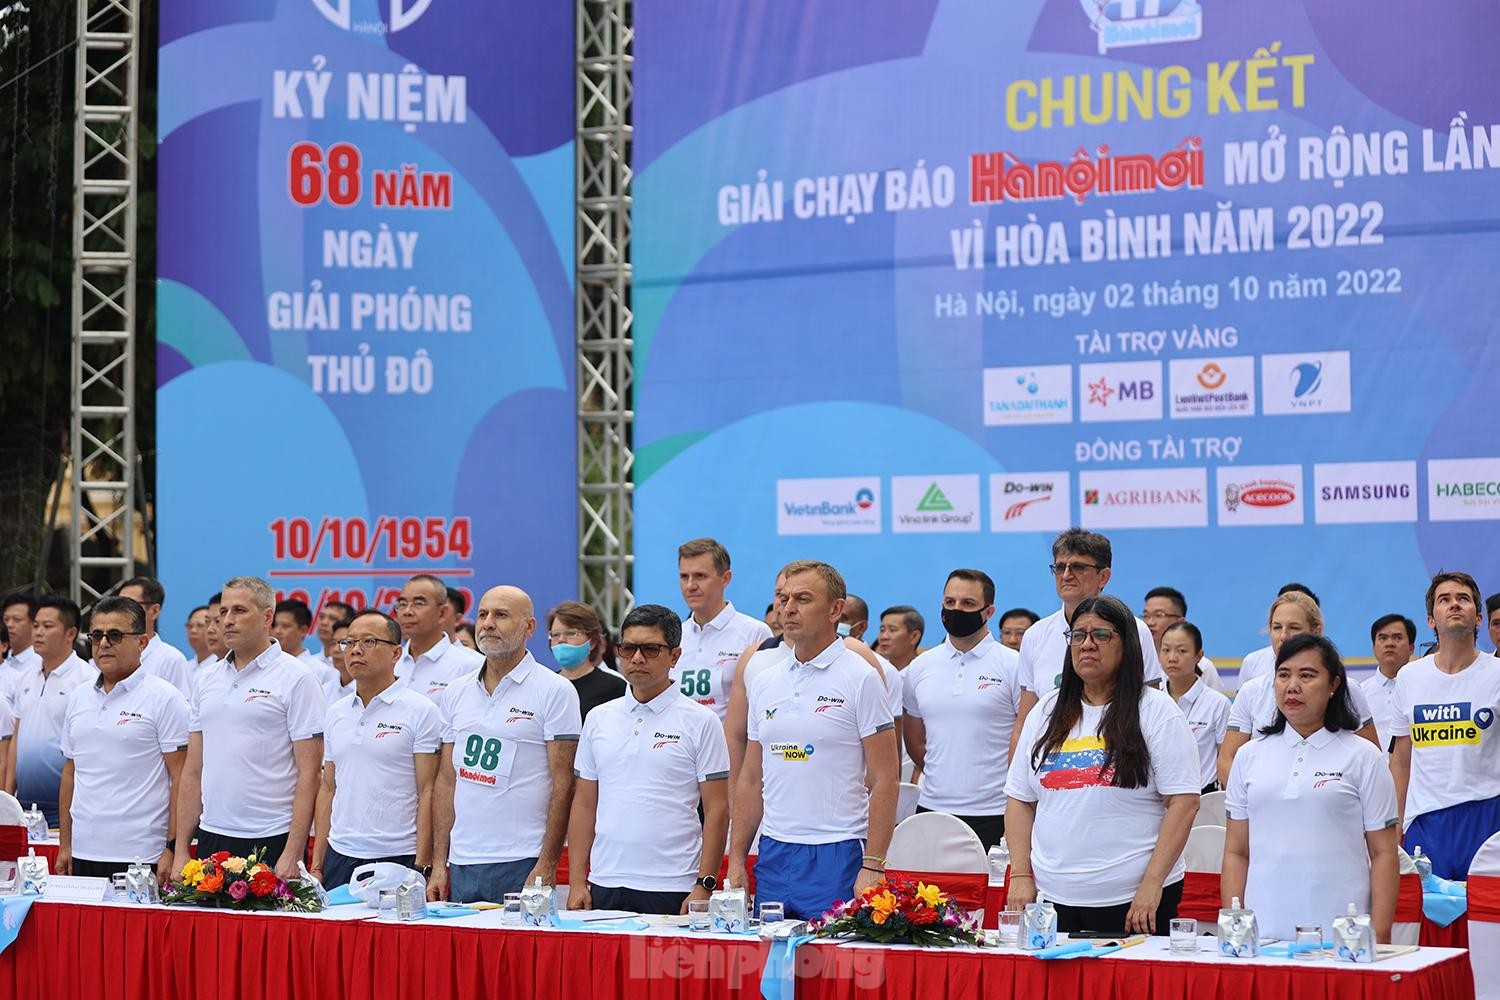 Gần 1.500 vận động viên tranh tài Giải chạy Báo Hà nội mới lần thứ 47 - Vì hòa bình ảnh 1